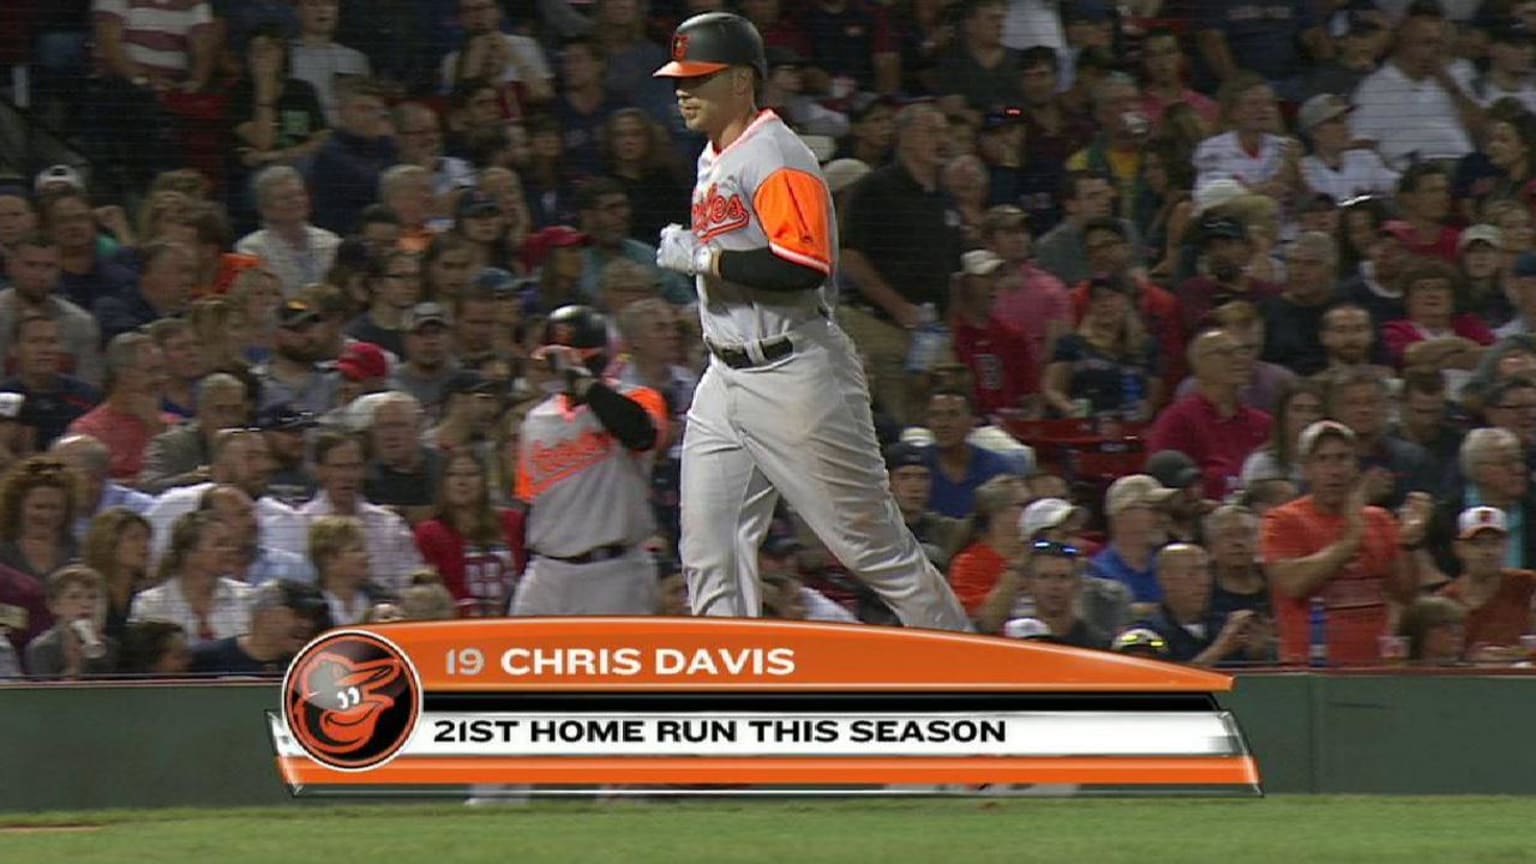 Chris Davis has real shot at MLB's legit single-season HR mark